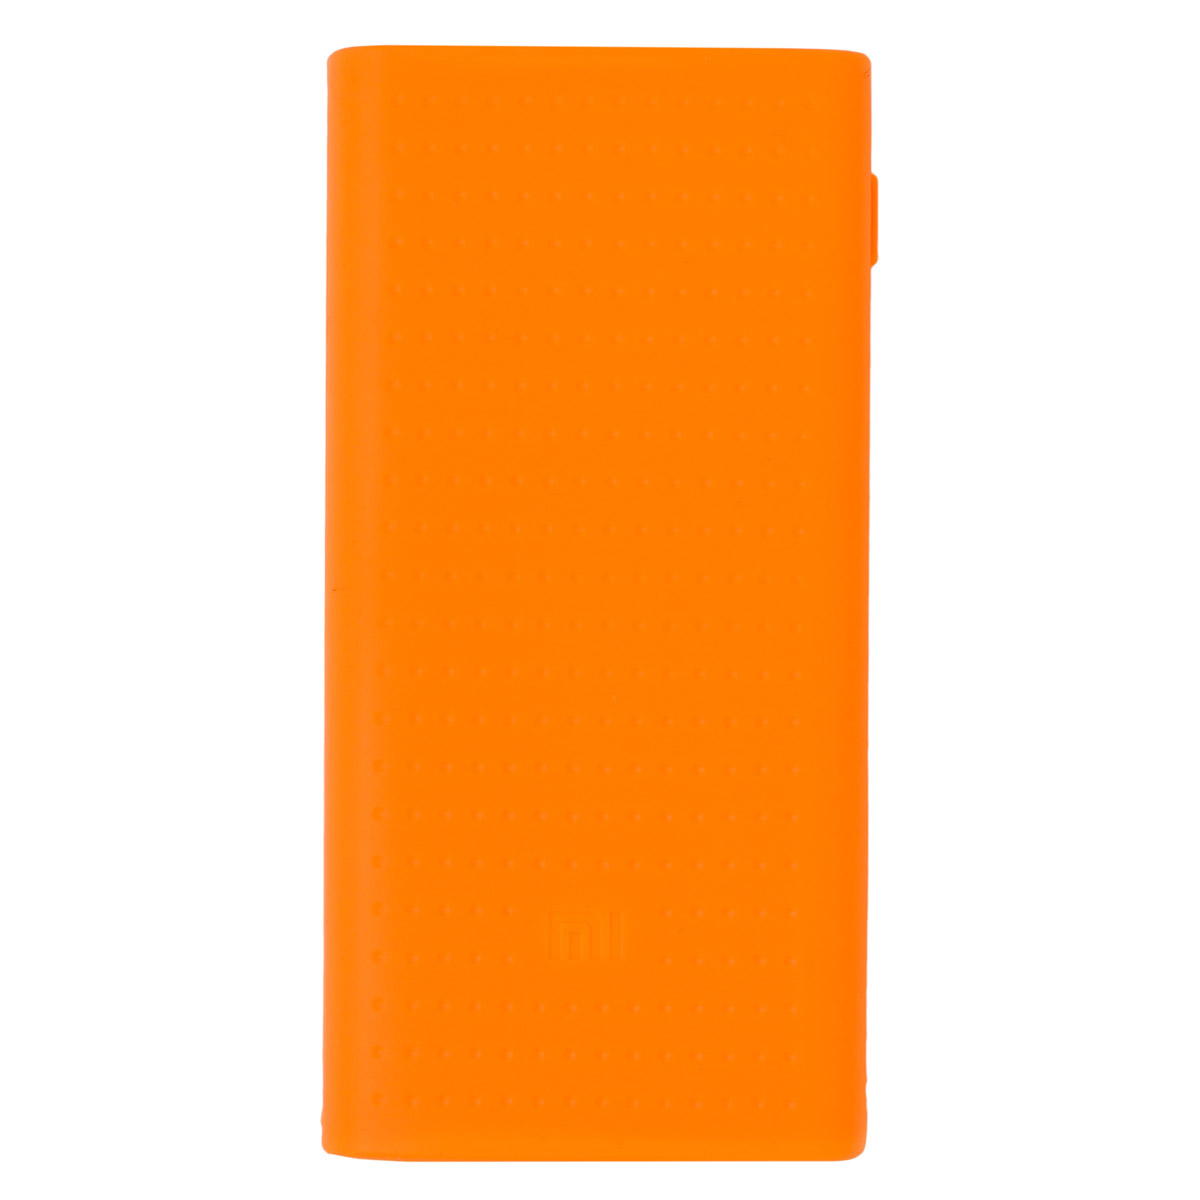 Силиконовый чехол для Mi Power Bank 2 20000 мAч (Оранжевый) шланг для душа силиконовый megaplane 200 см